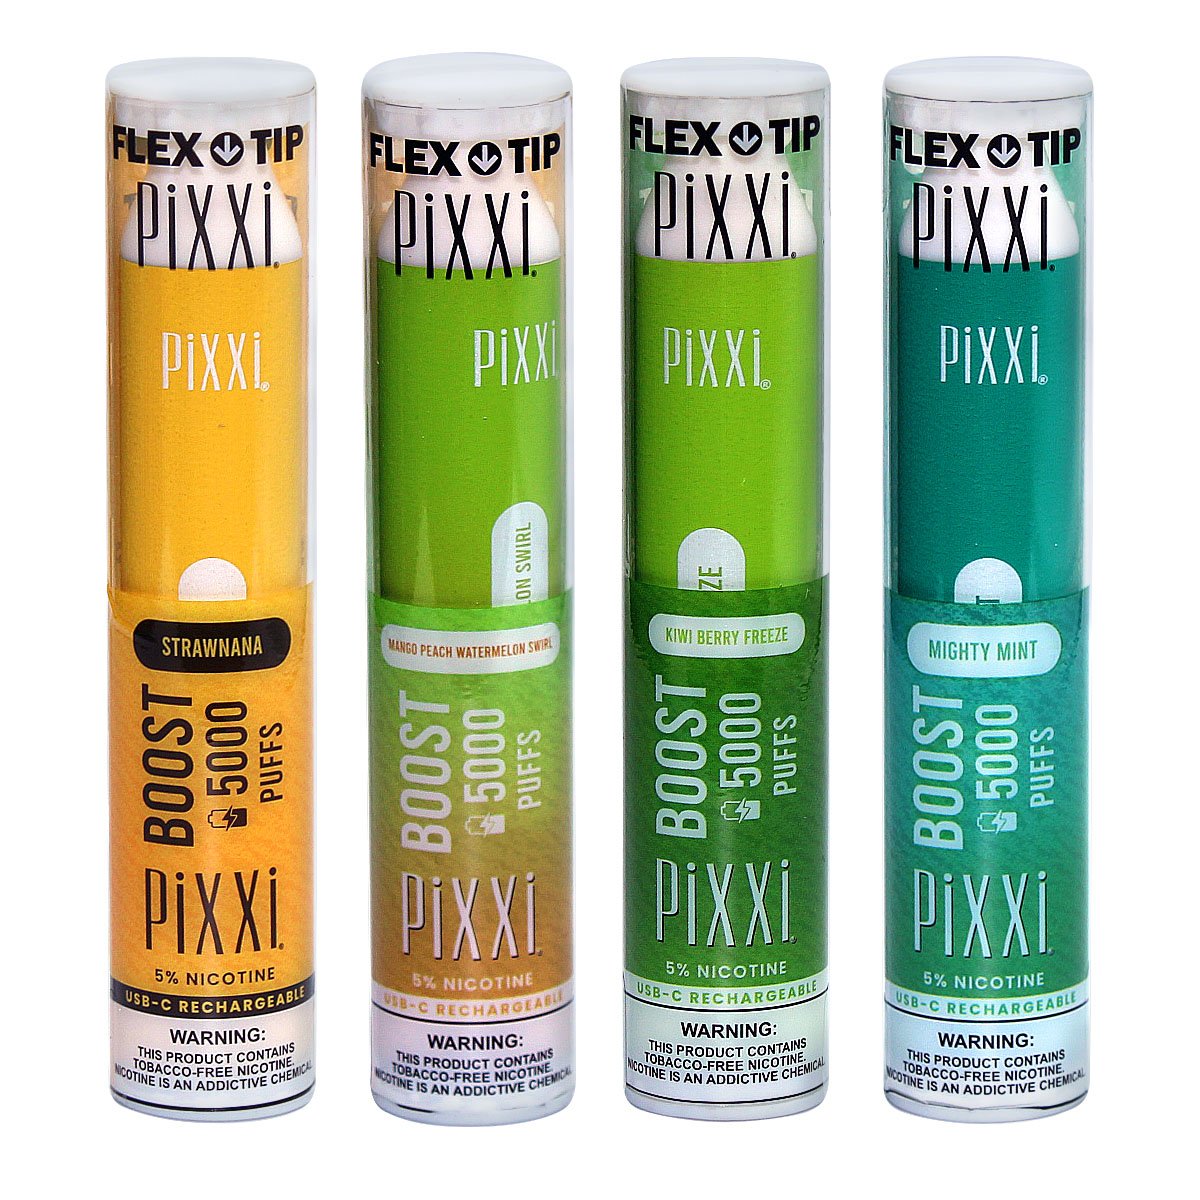 Pixxi Boost Disposable Vape 5000 puffs